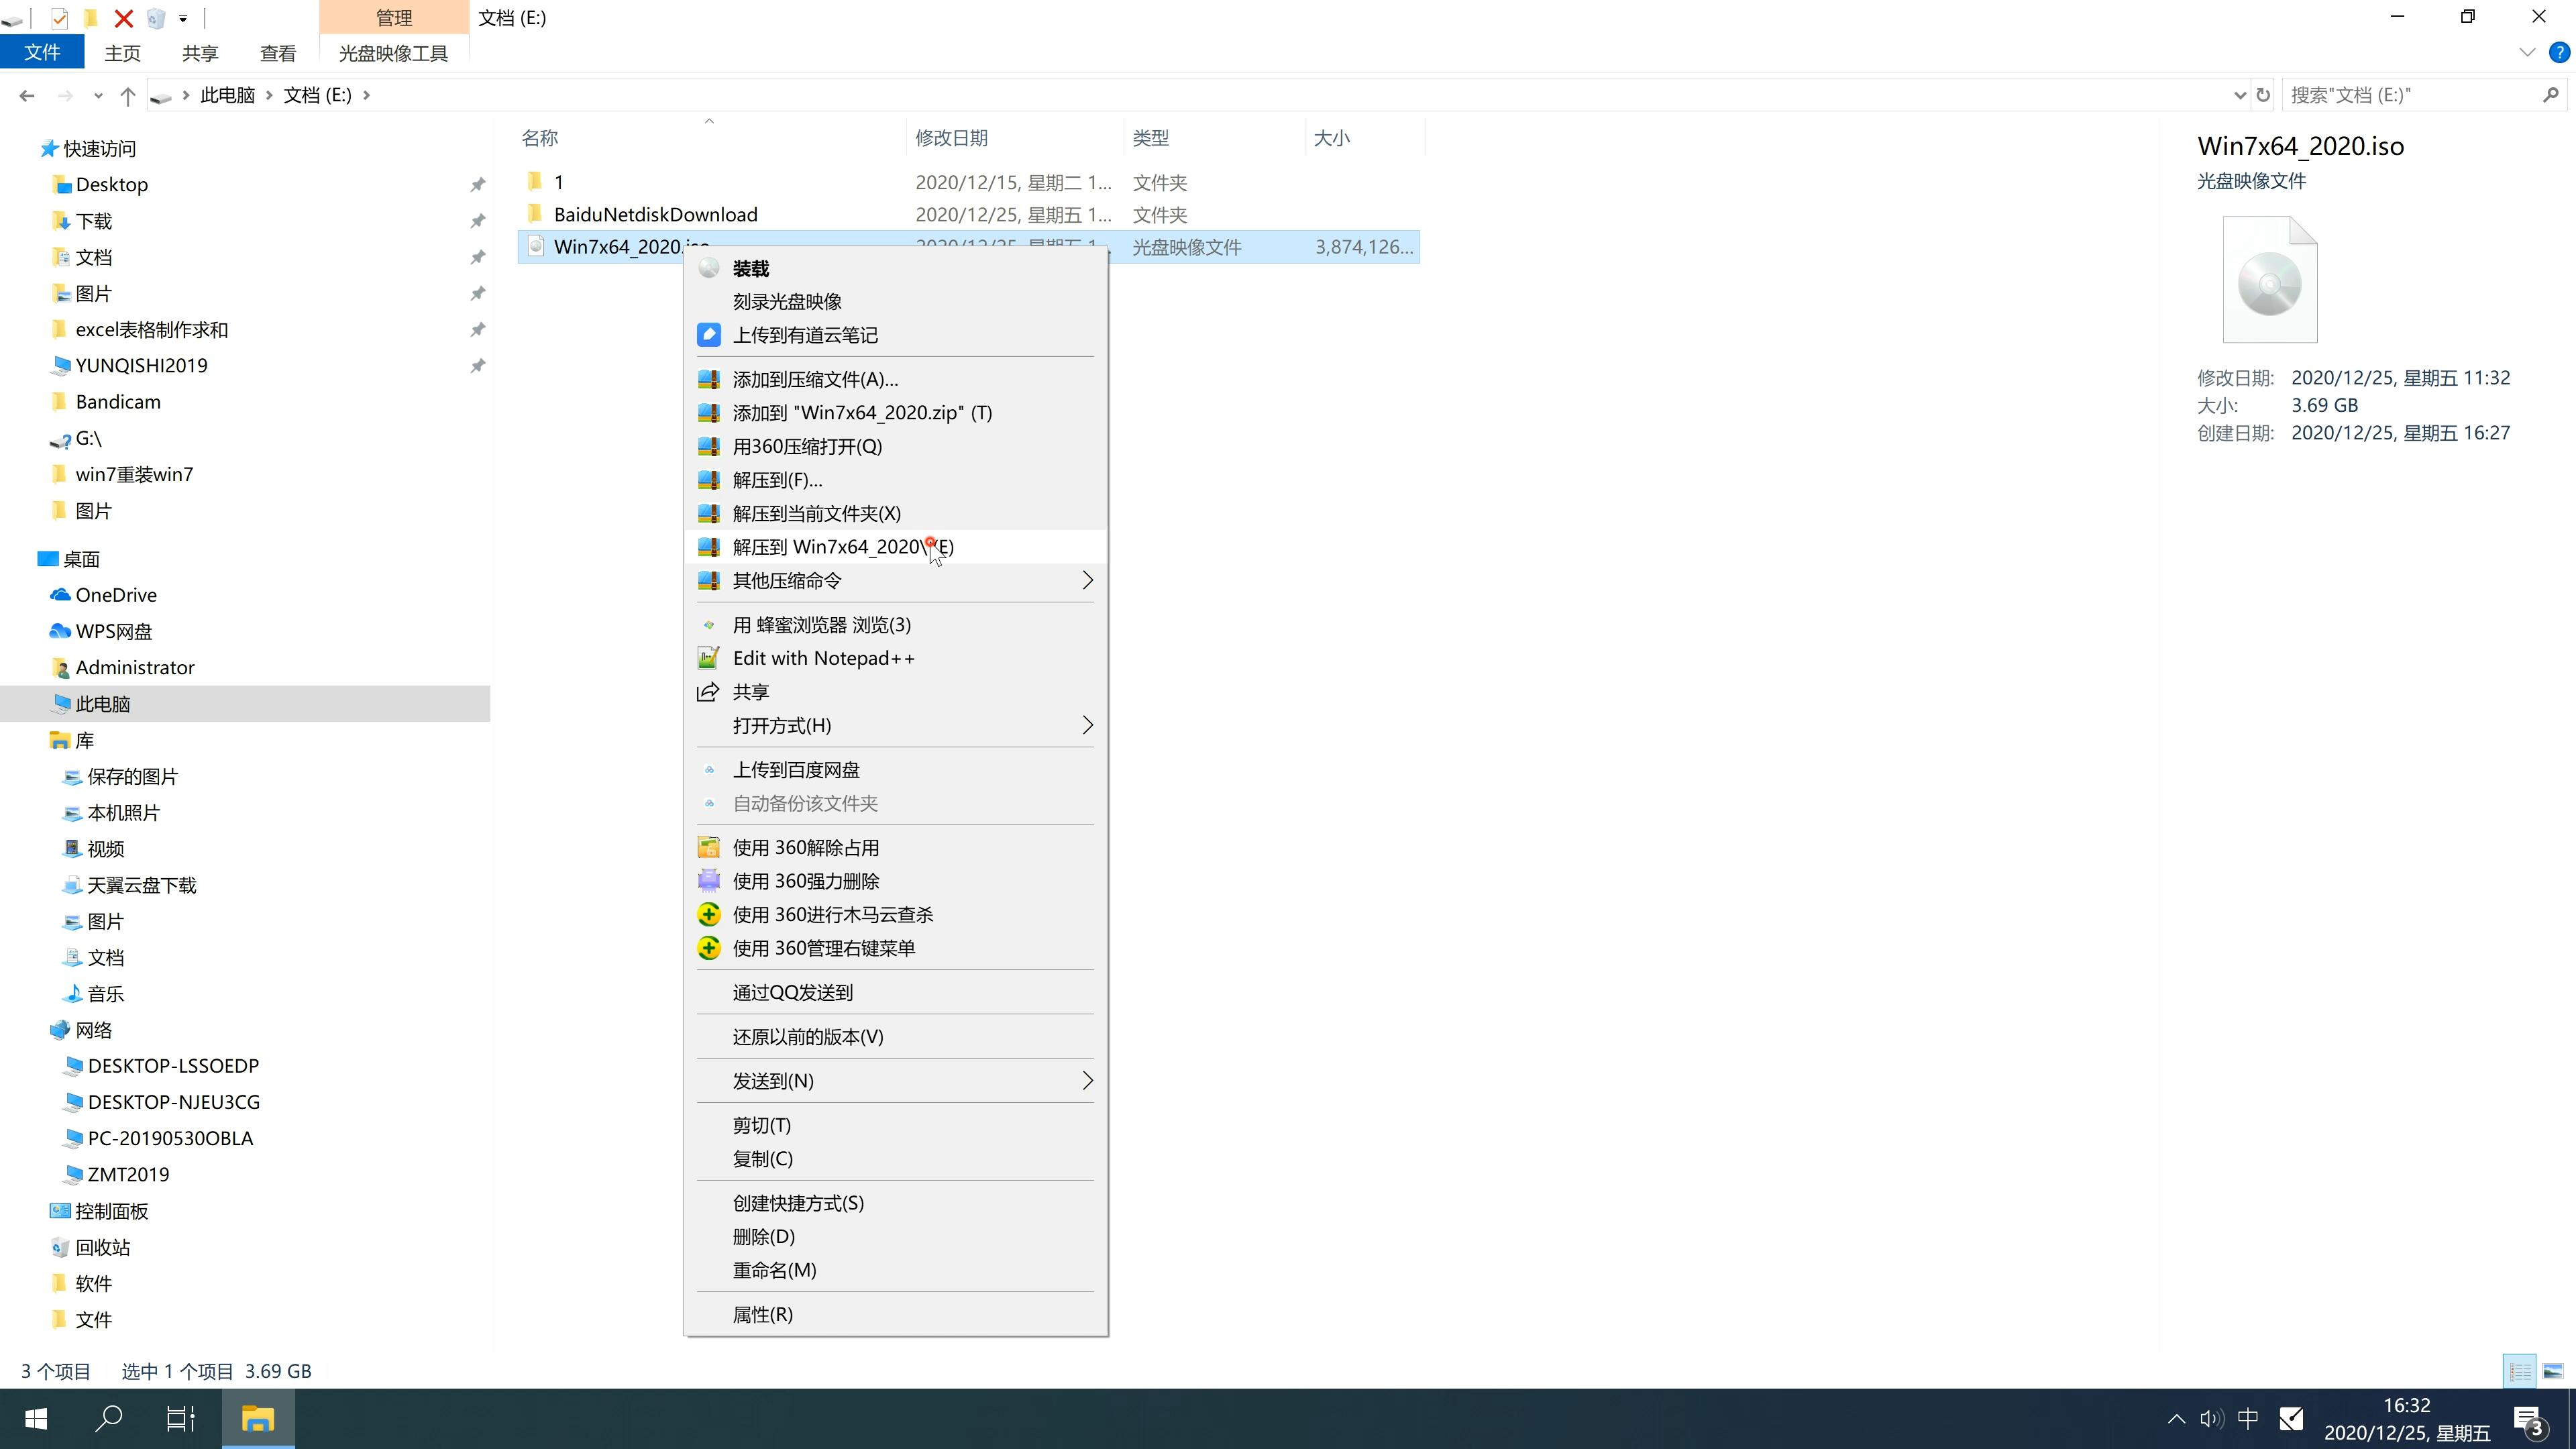 新版技术员联盟系统 GHOST Window7 x64  纯净版系统镜像文件下载 V2021.02(2)